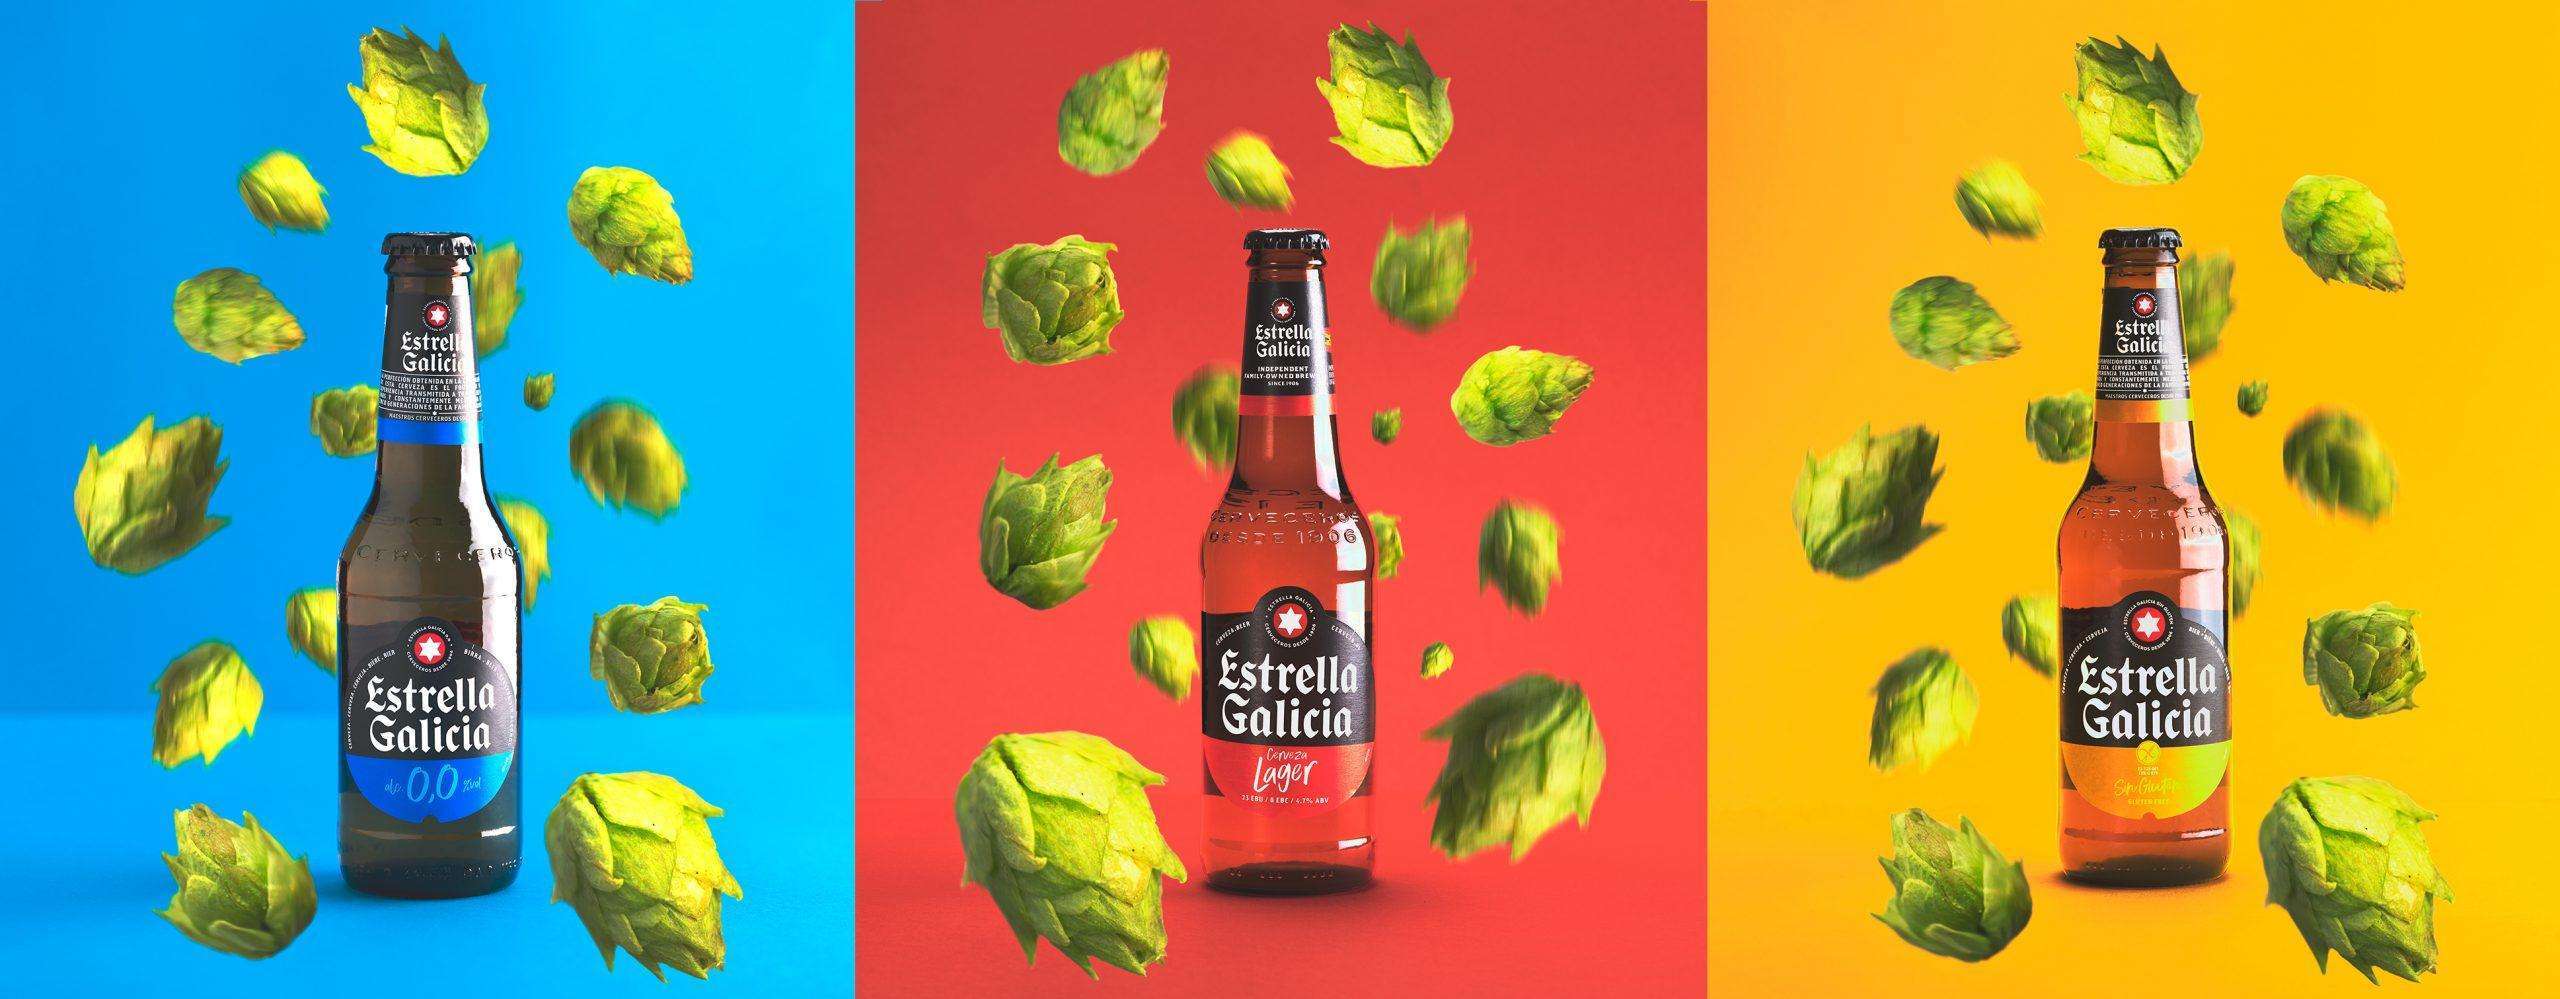 Cervezas Estrella Galicia color